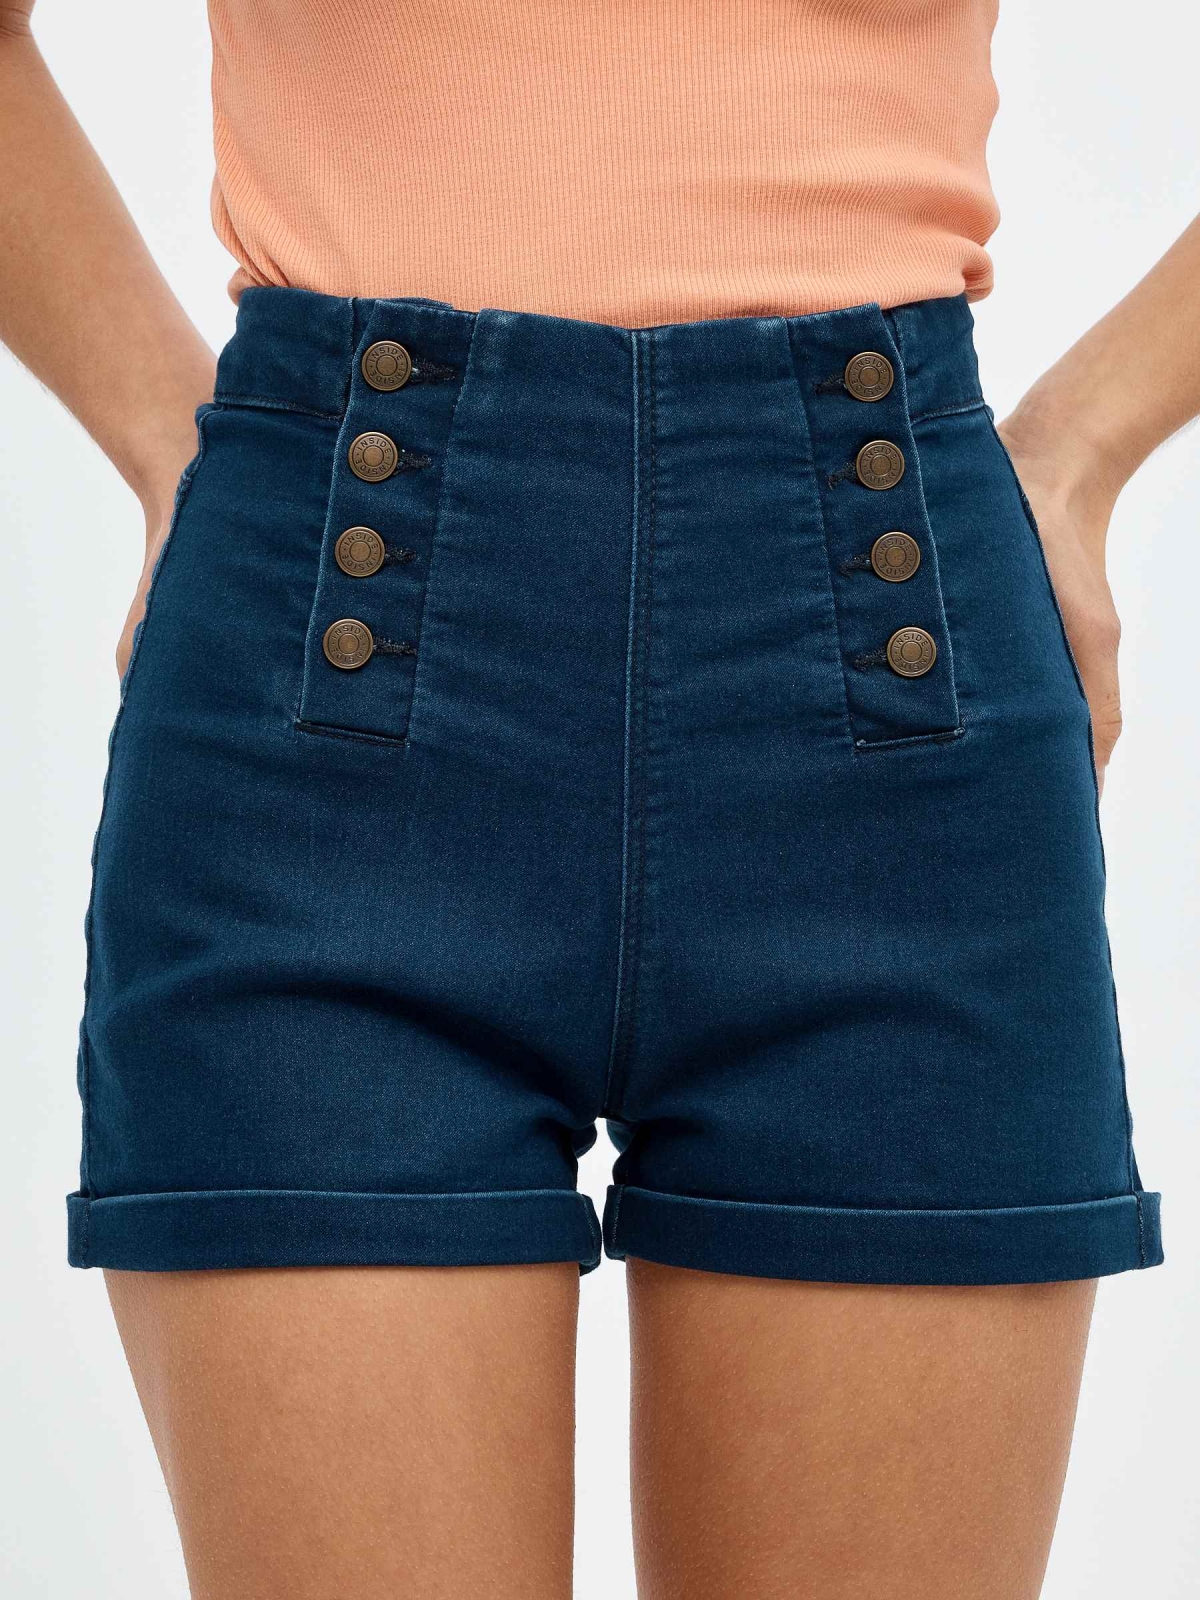 Buttoned high waist denim shorts blue detail view